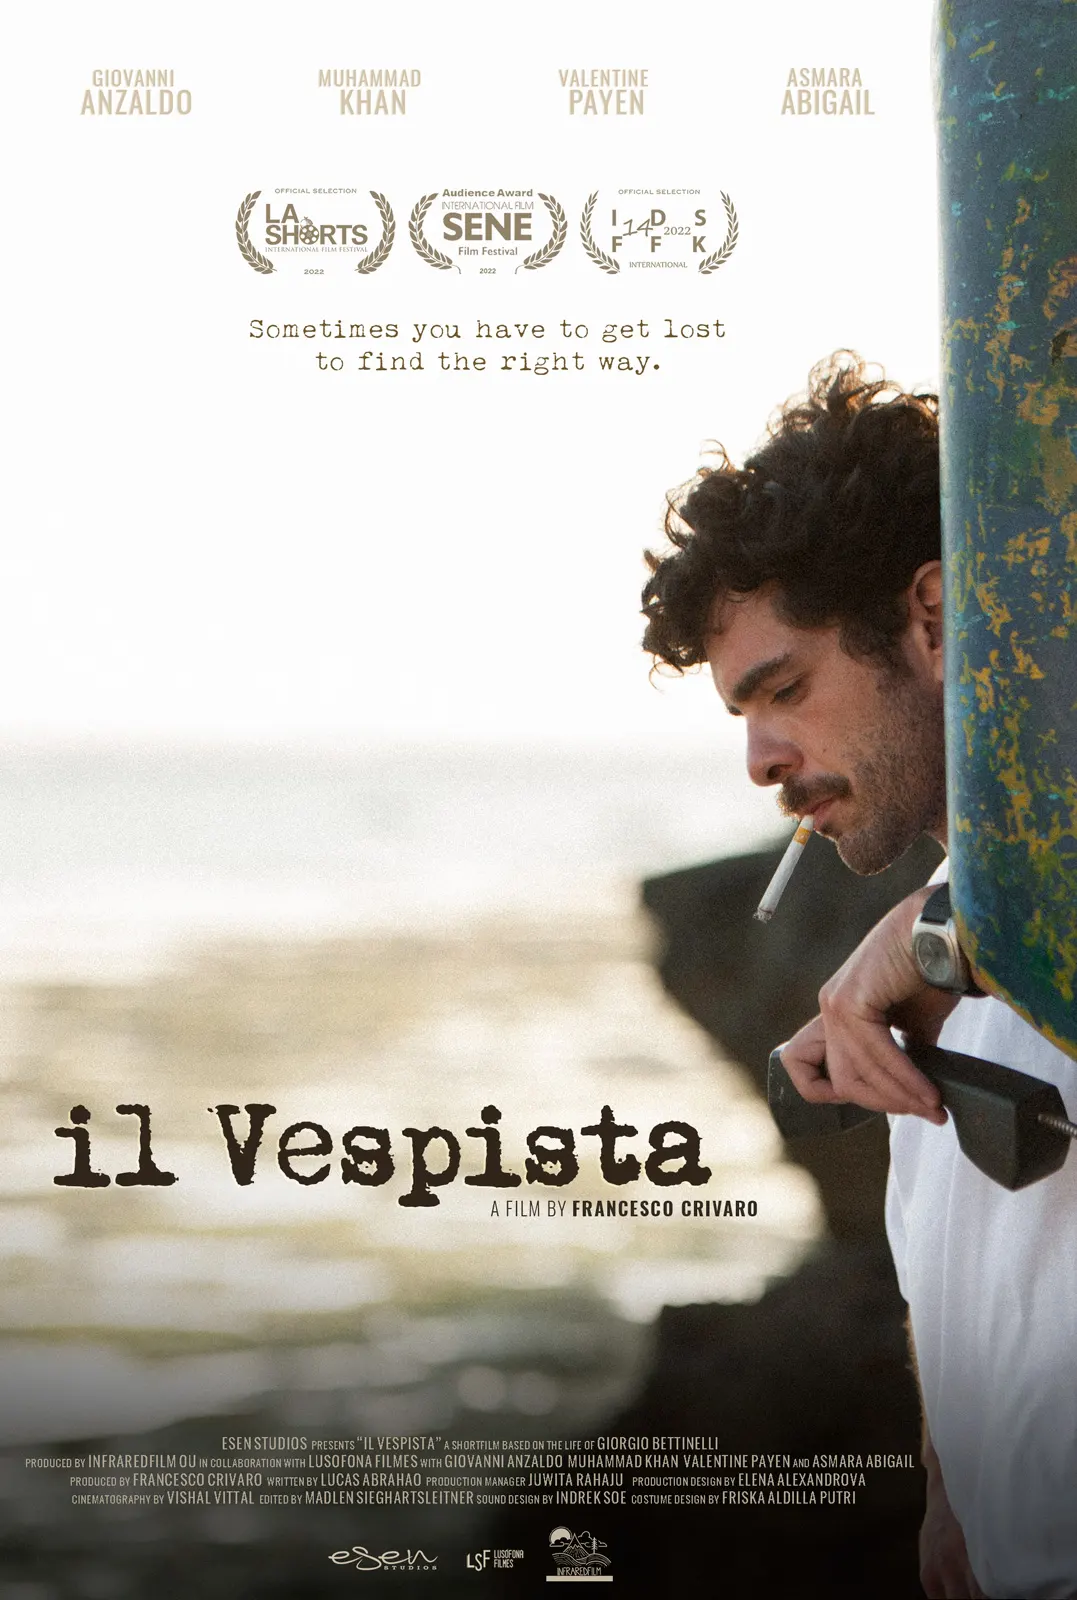 Distribuzione del cortometraggio "Il Vespista": poster del film